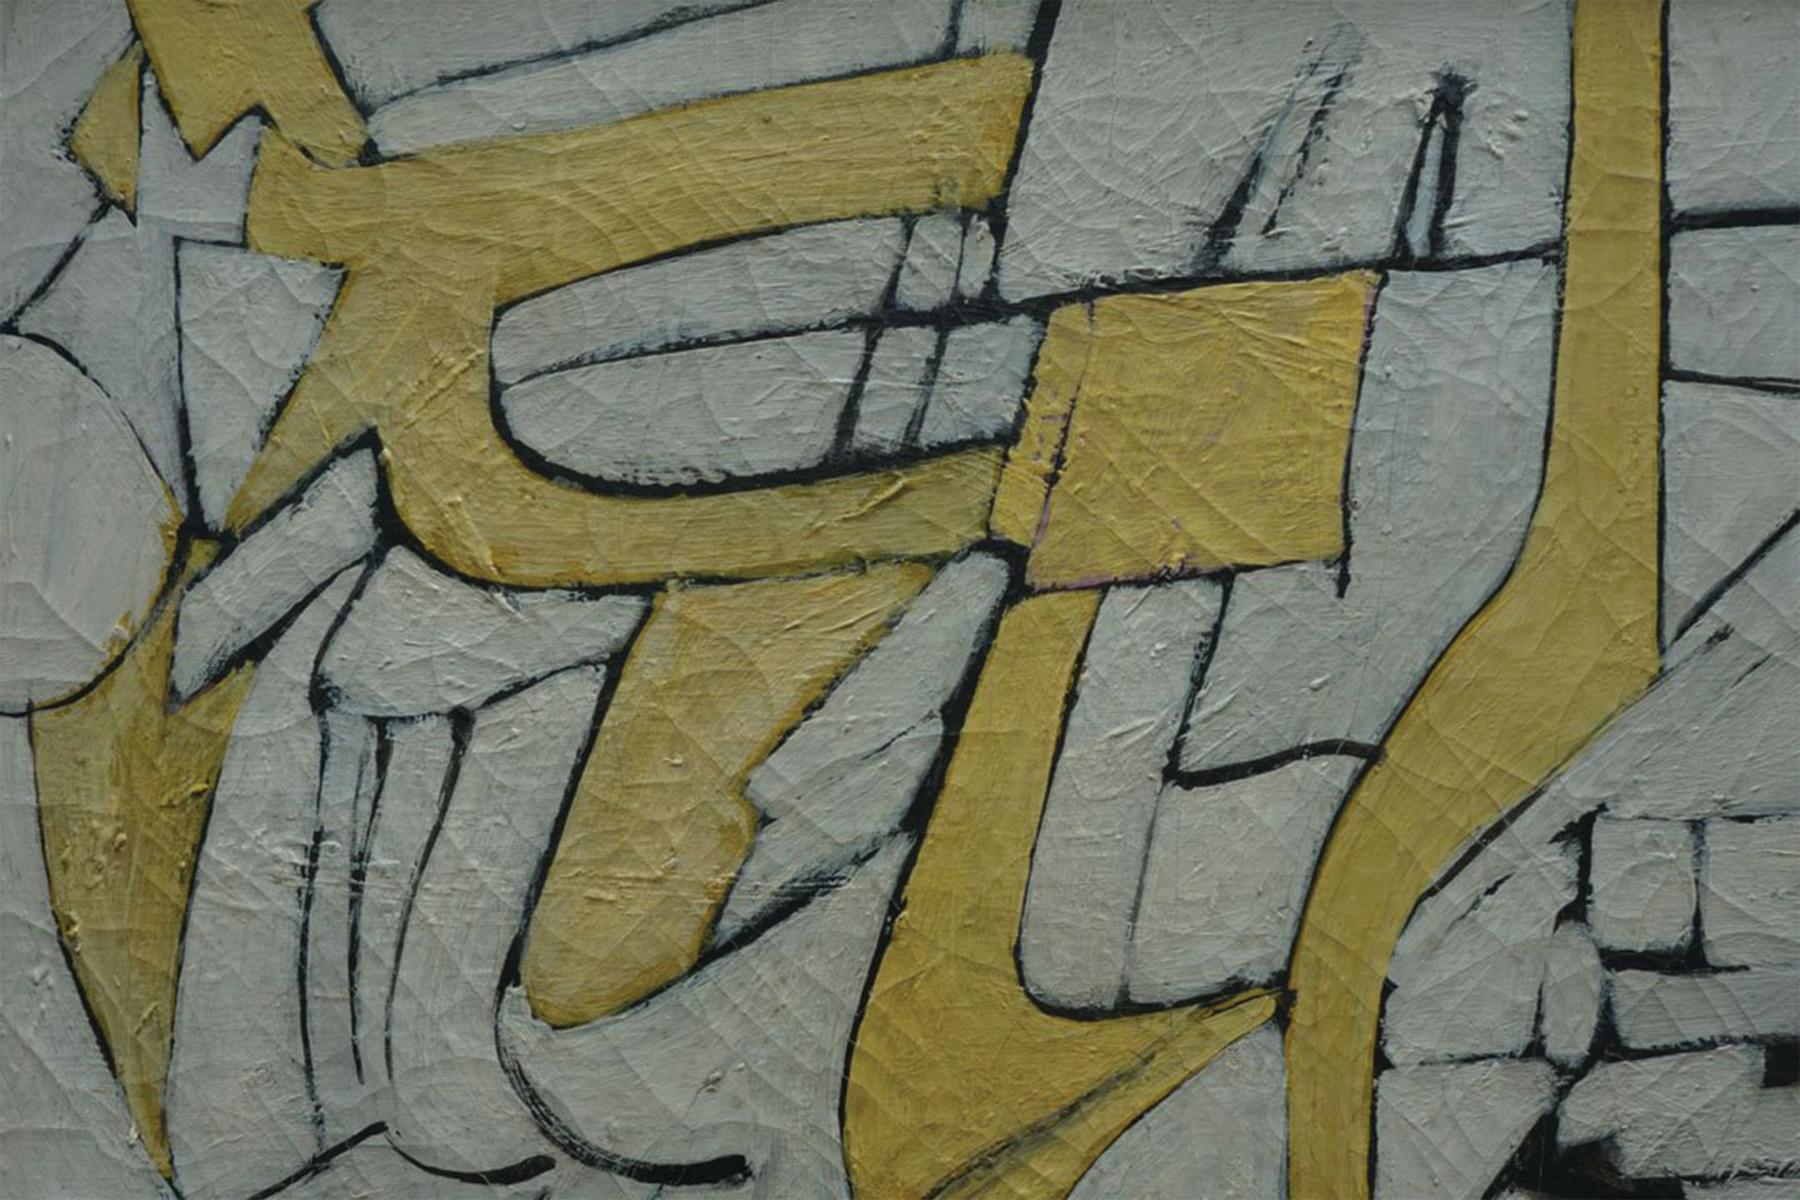 Abstrakt-expressionistisches, weißes und gelbes geometrisches Gemälde aus der Mitte des Jahrhunderts (Abstrakter Expressionismus), Painting, von Richard Andres